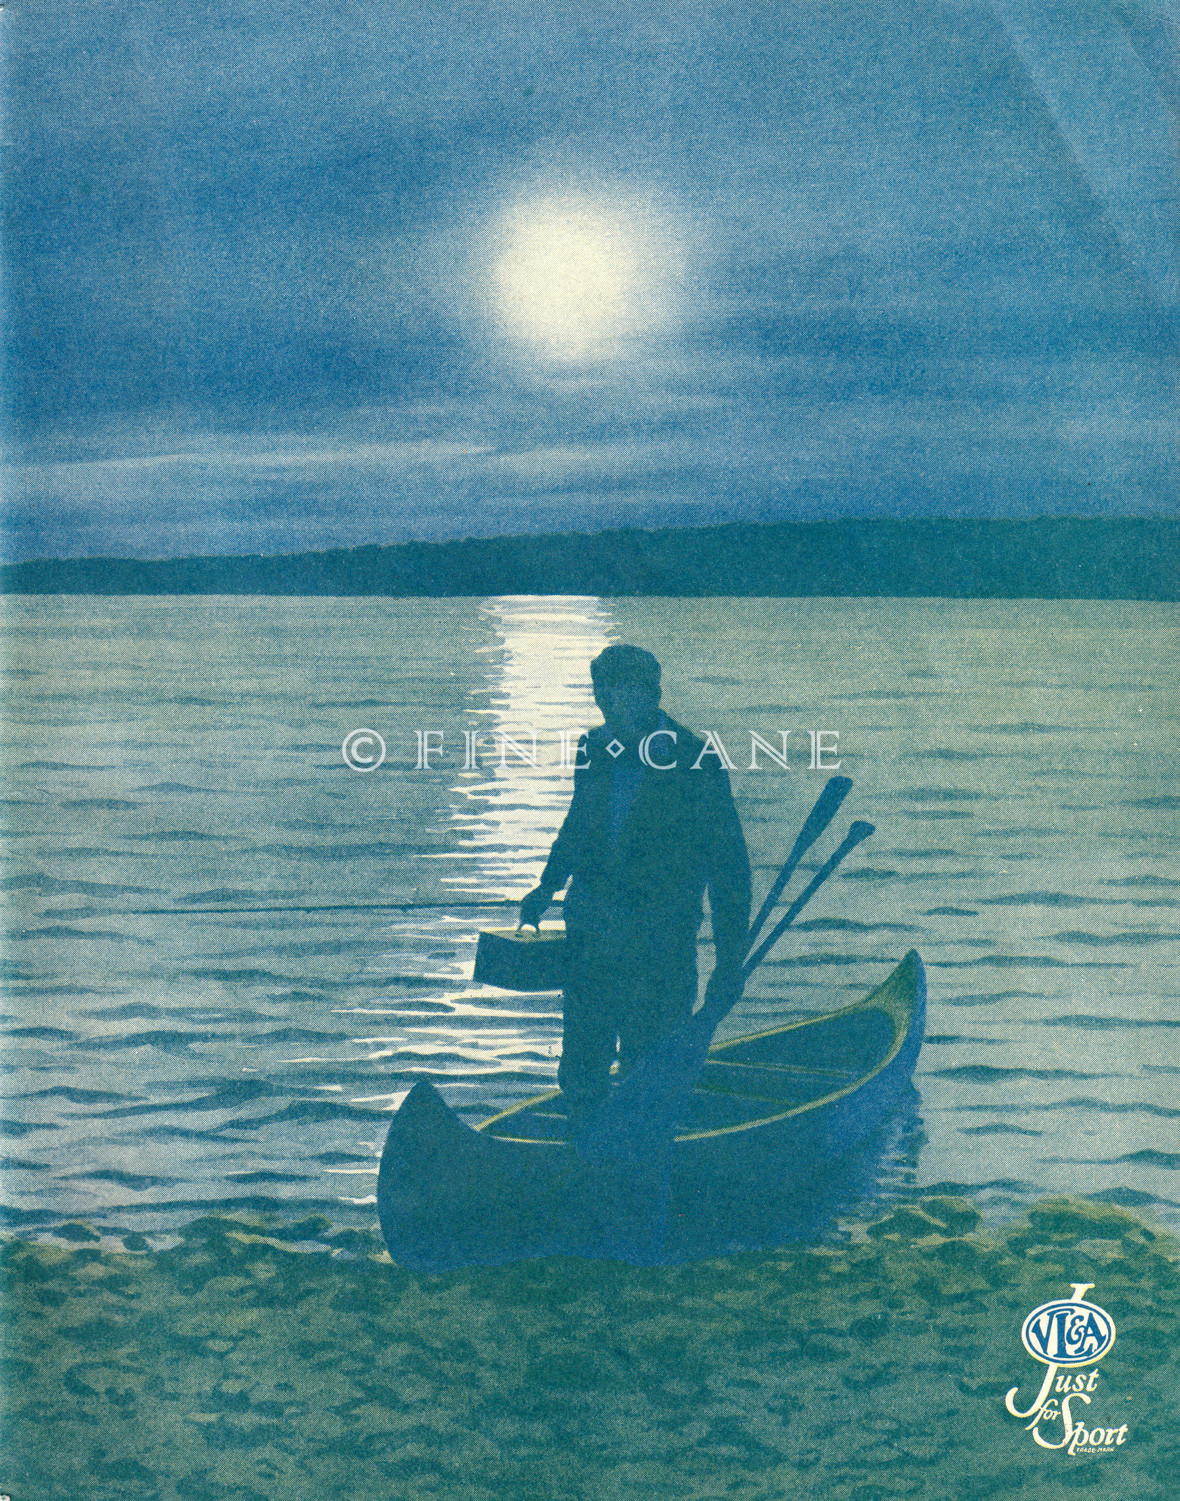 1934 VL&A Catalog Cover